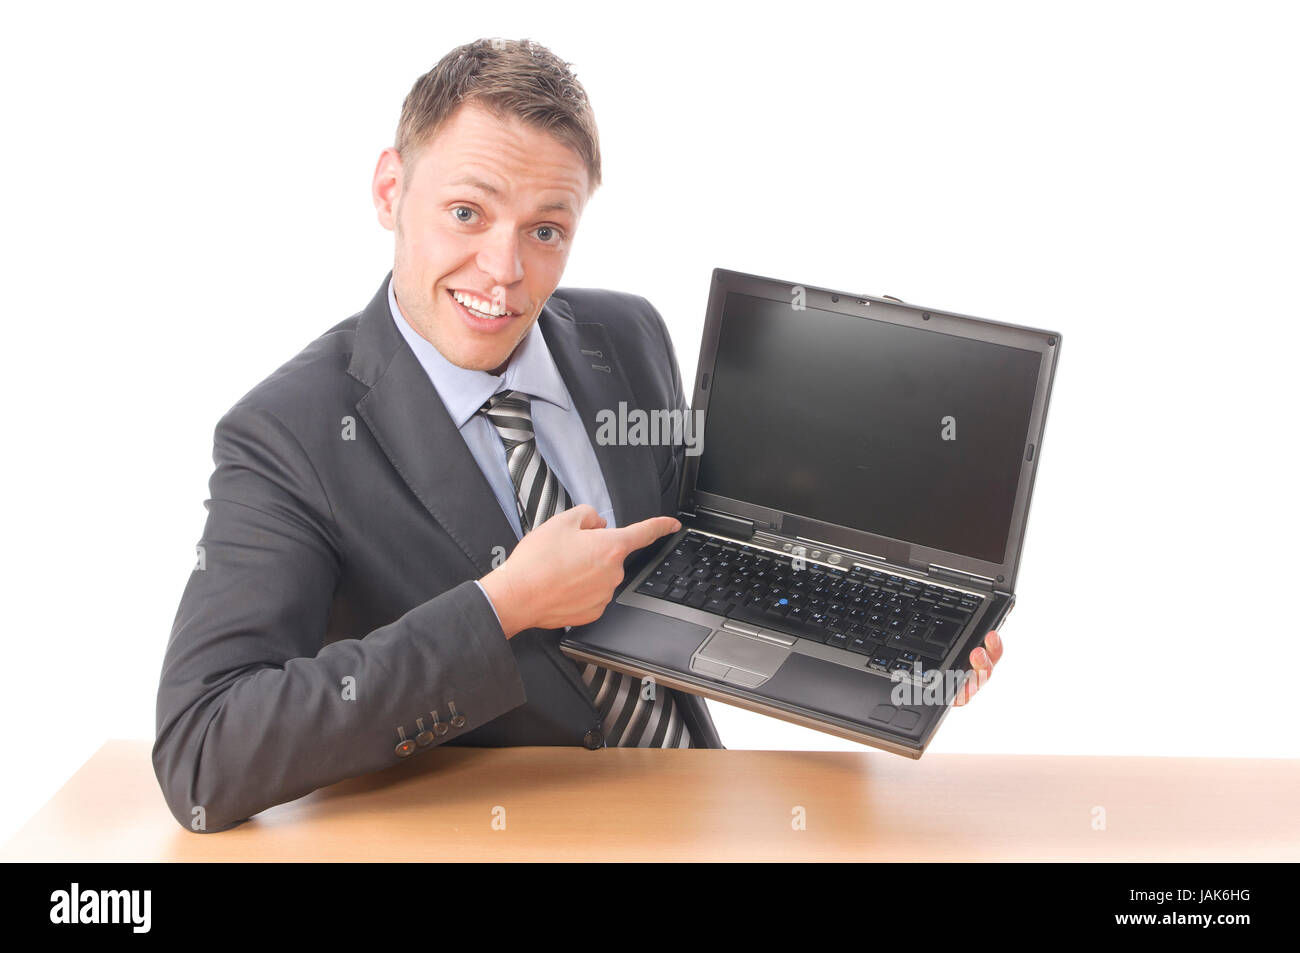 Junger Geschäftsmann in Anzug und Krawatte sitzt am Schreibtisch und zeigt stolz auf seinen Notebook Bildschirm. Freigestellt vor weißem Hintergrund Stock Photo